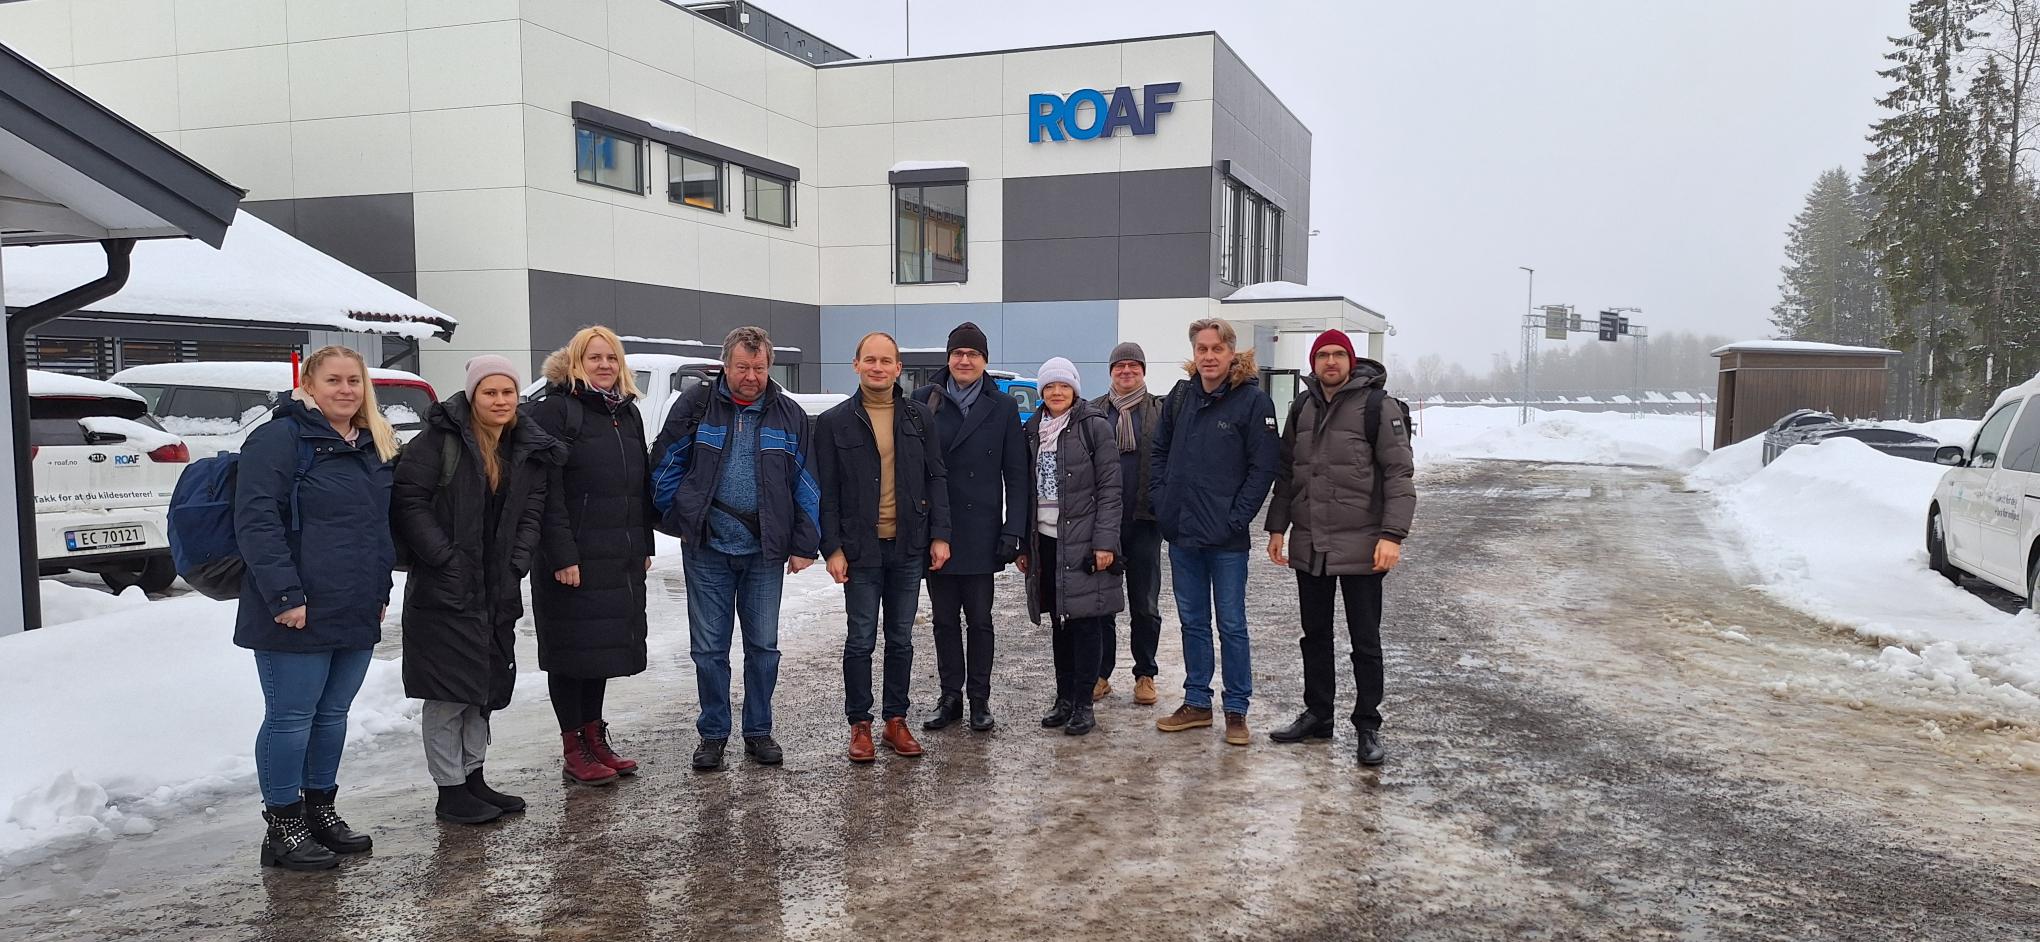 Tutvumine Norra jäätmete sorteerimistehasega ROAF